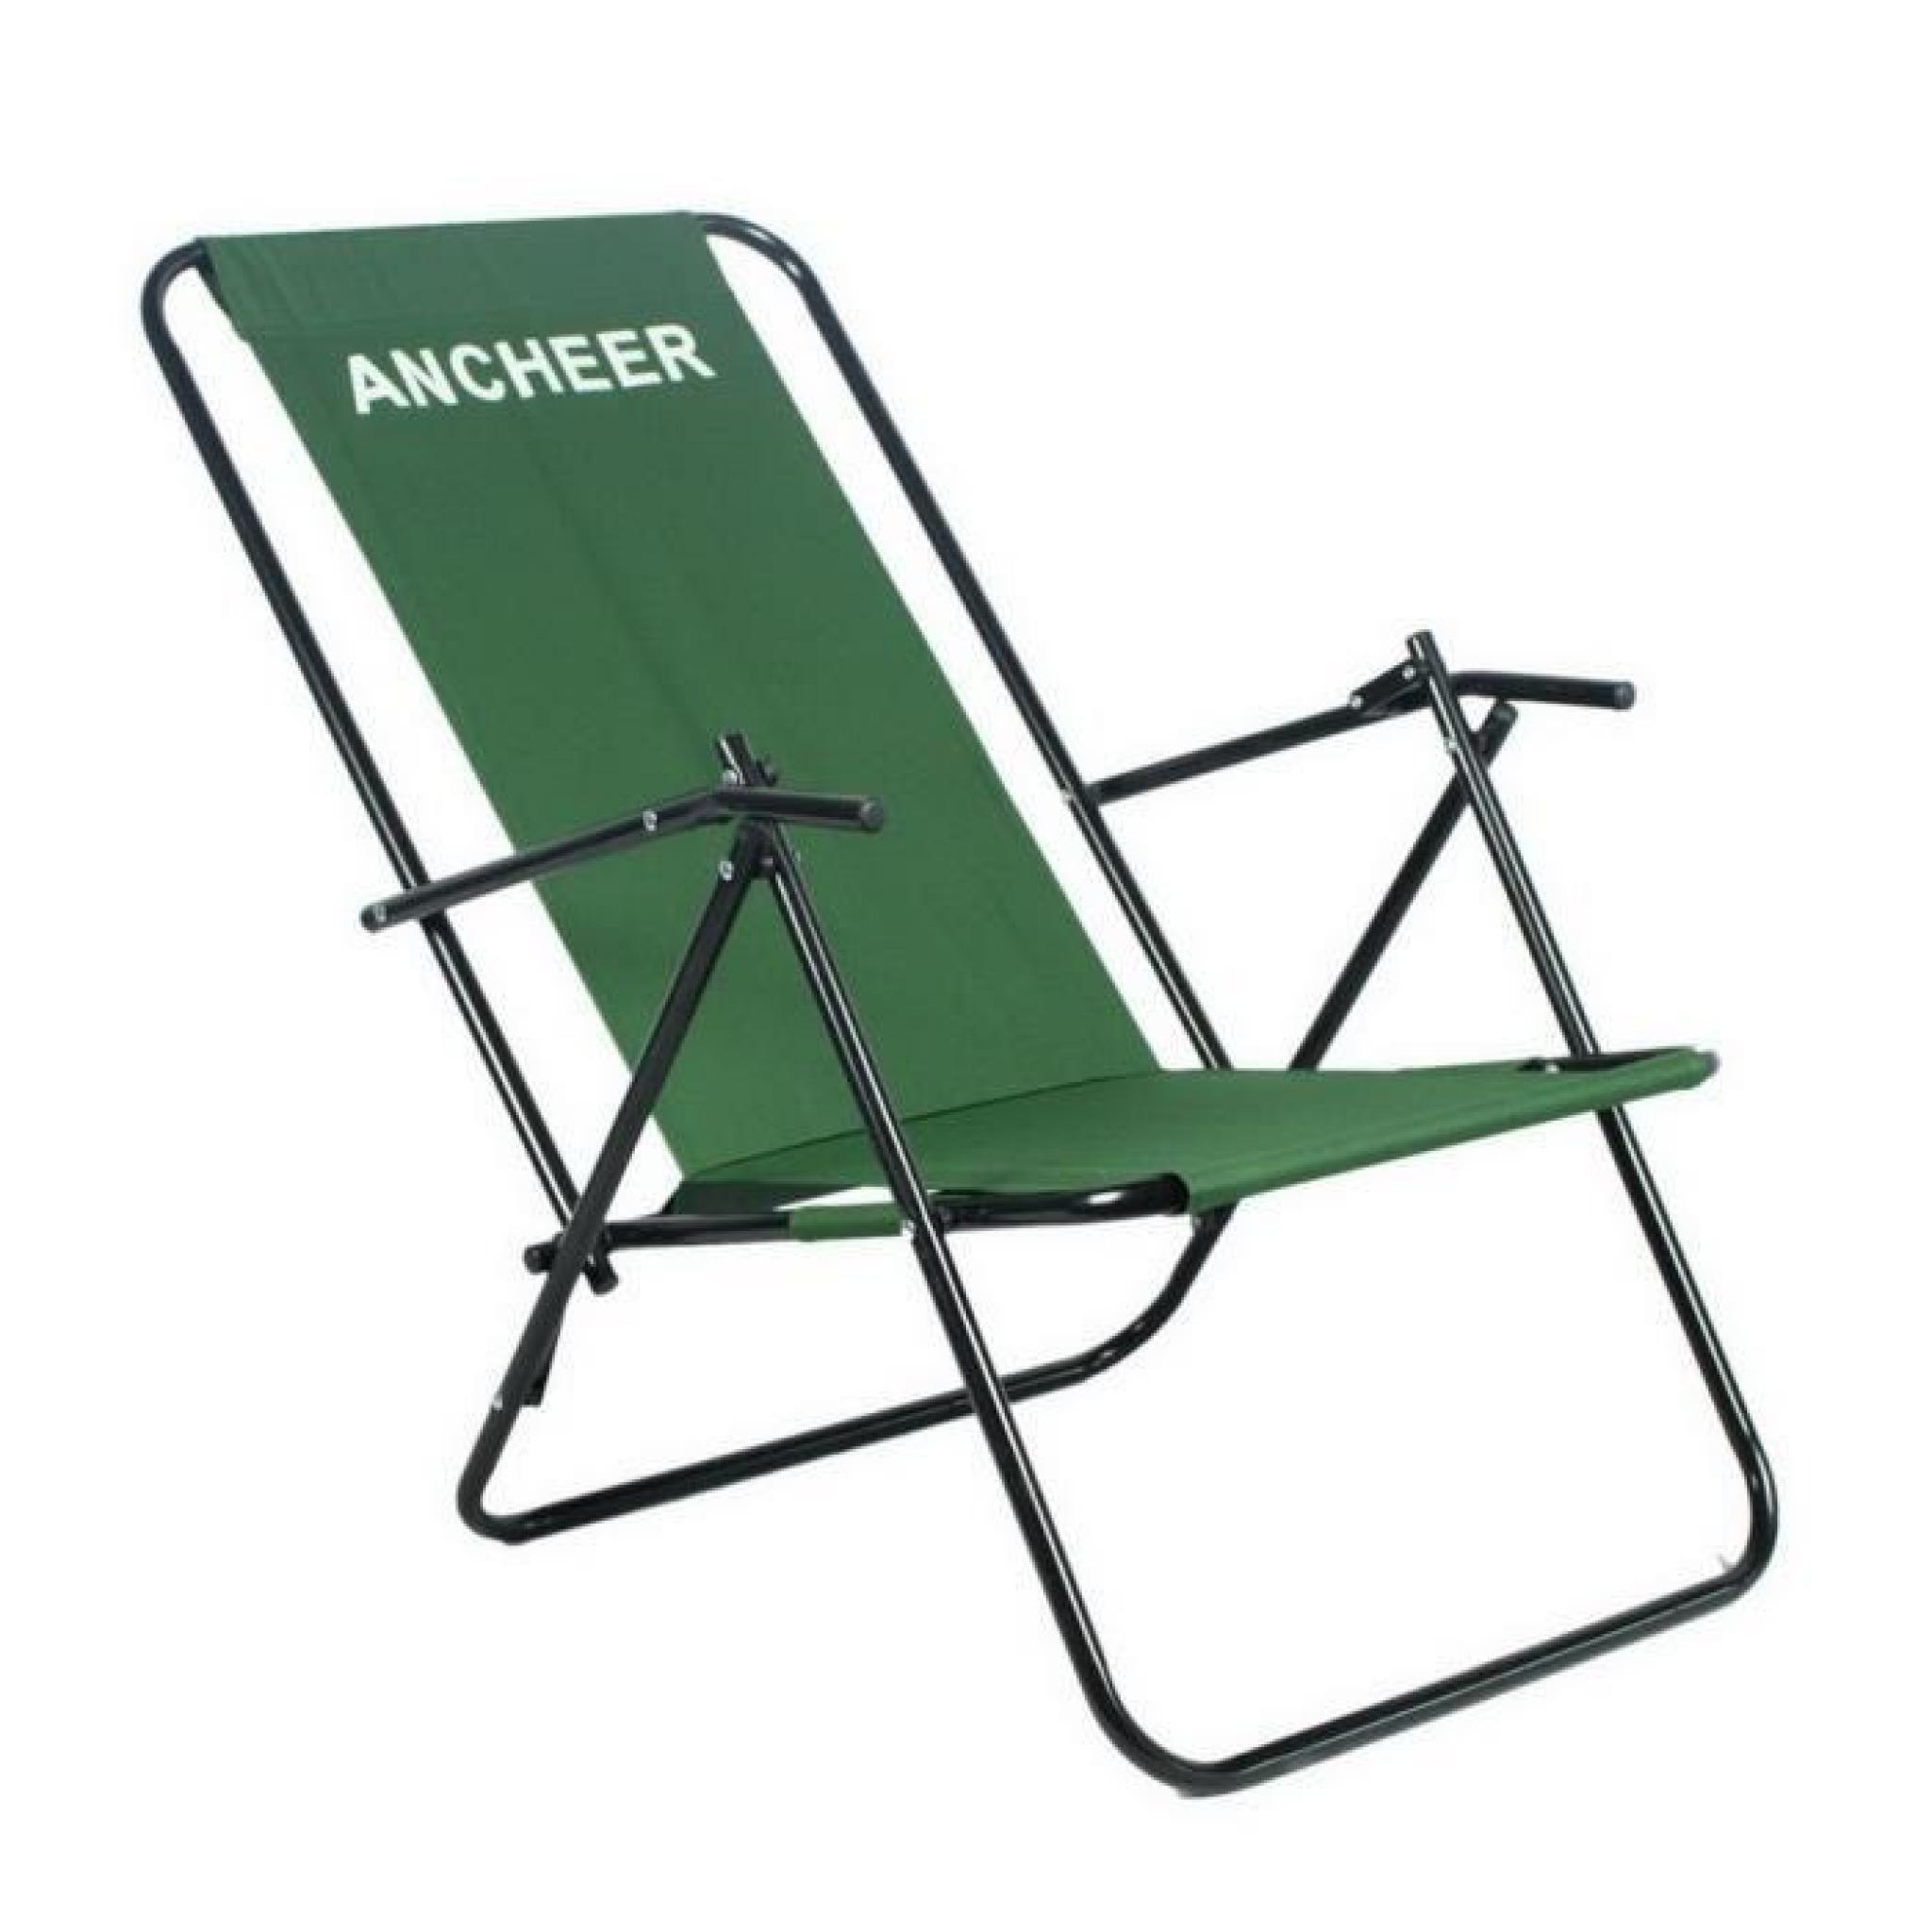 ANCHEER Portable Outdoor Camping pliante chaise inclinable avec accoudoir pas cher